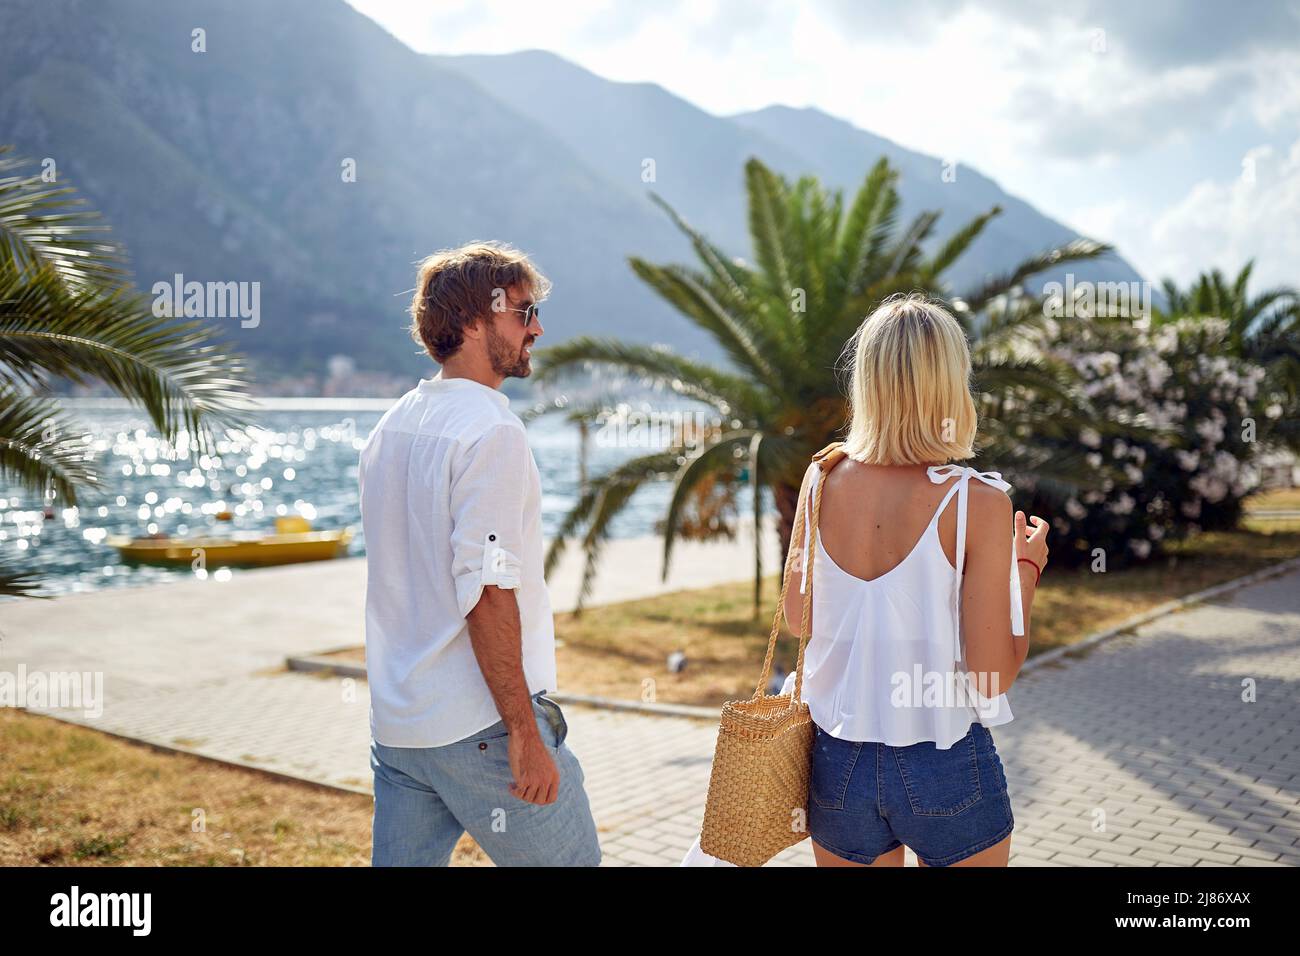 Una giovane coppia sta godendo una passeggiata sul molo in una bella giornata di sole sul mare. Amore, rapporto, vacanza, mare Foto Stock